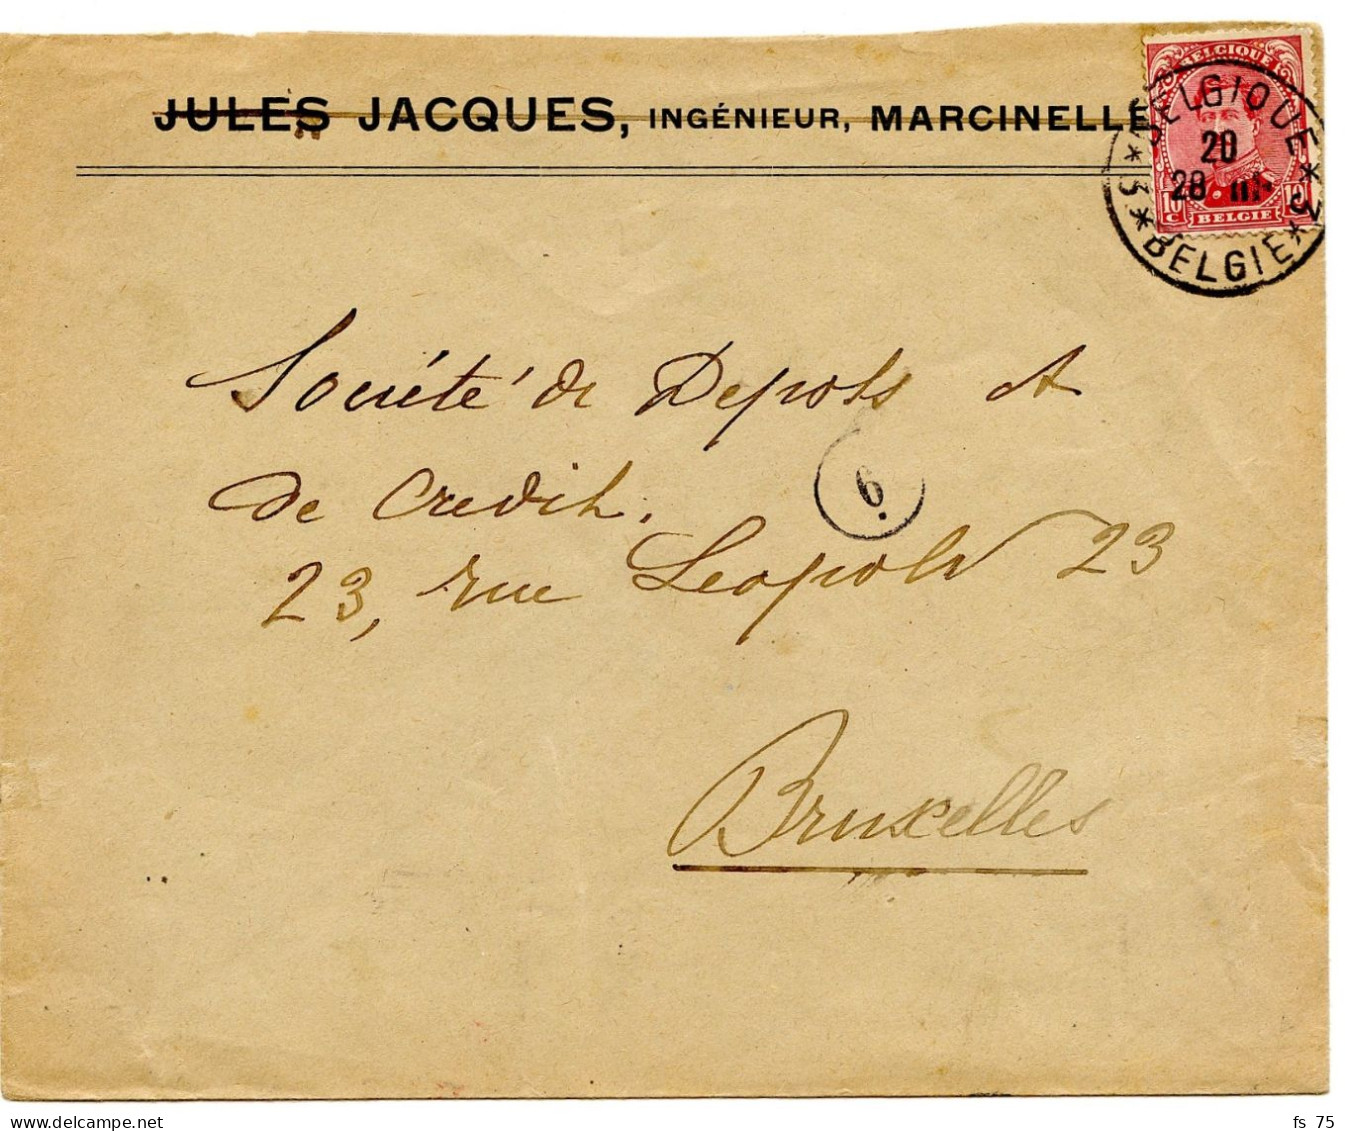 BELGIQUE - COB 138 SIMPLE CERCLE BILINGUE 3 * BELGIQUE * 3  SUR LETTRE DE MARCINELLE, 1919 - Brieven En Documenten